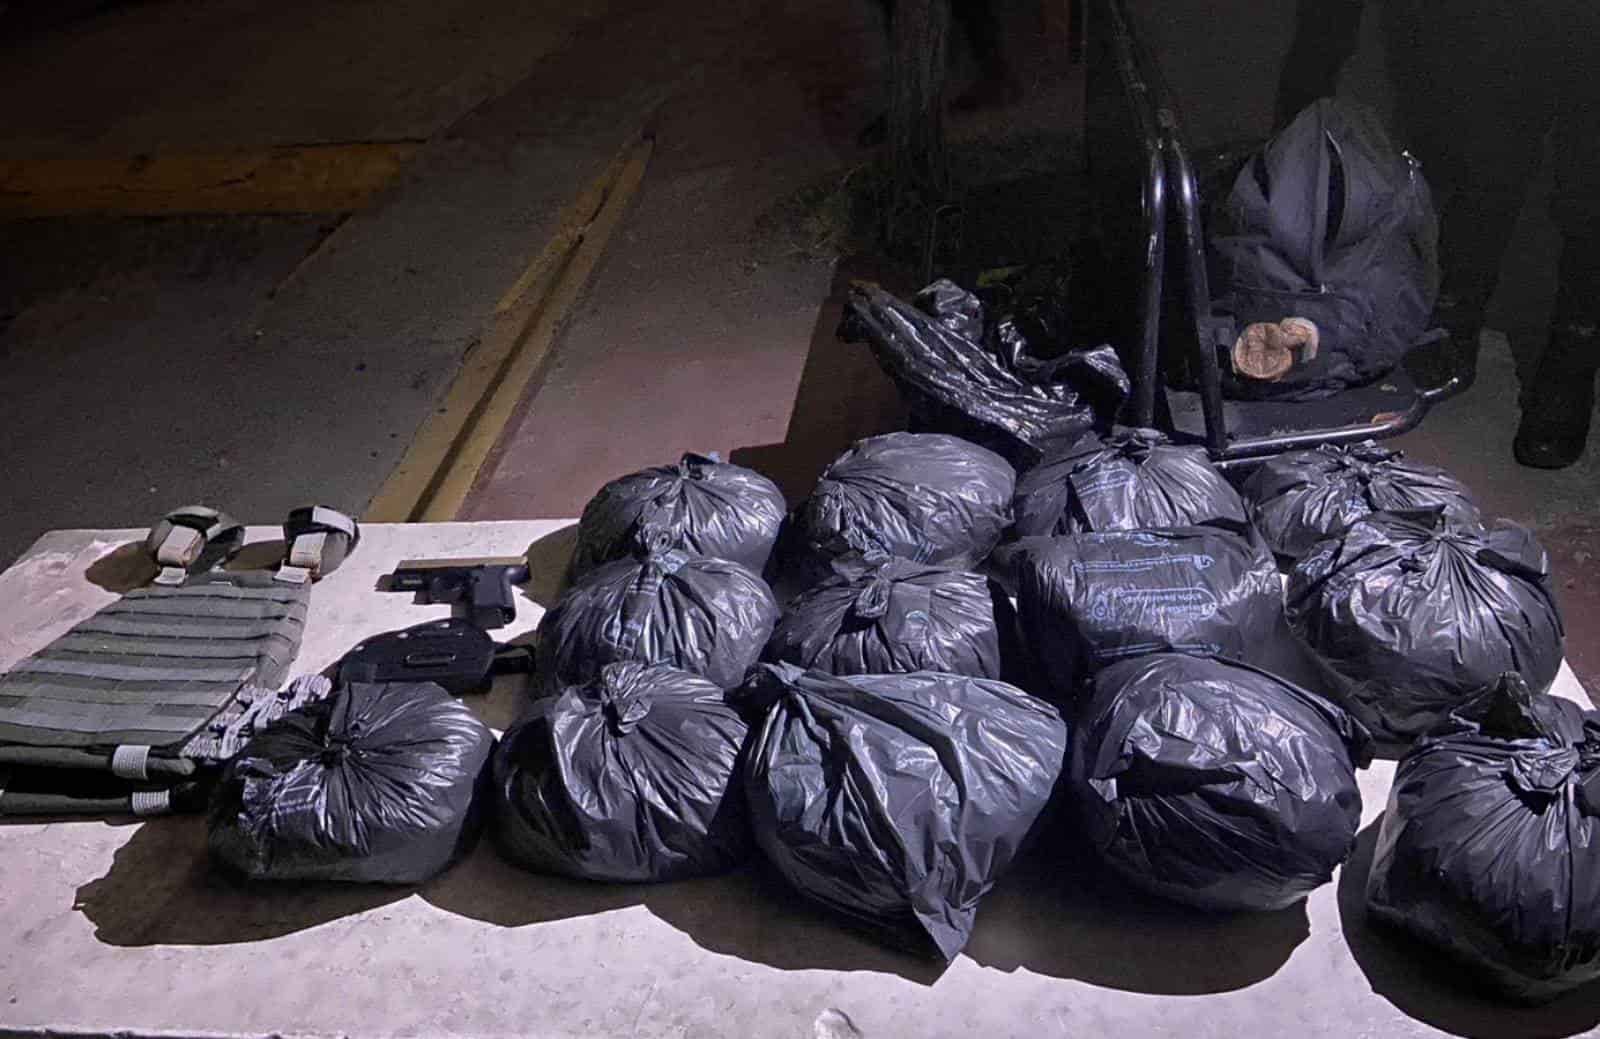 Un pepenador que llevaba 13 kilos de marihuana, un chaleco antibalas y un arma de fuego con 15 cartuchos hábiles, fue detenido por elementos de la Policía de Proximidad de Escobedo, en la Colonia Fomerrey 9.